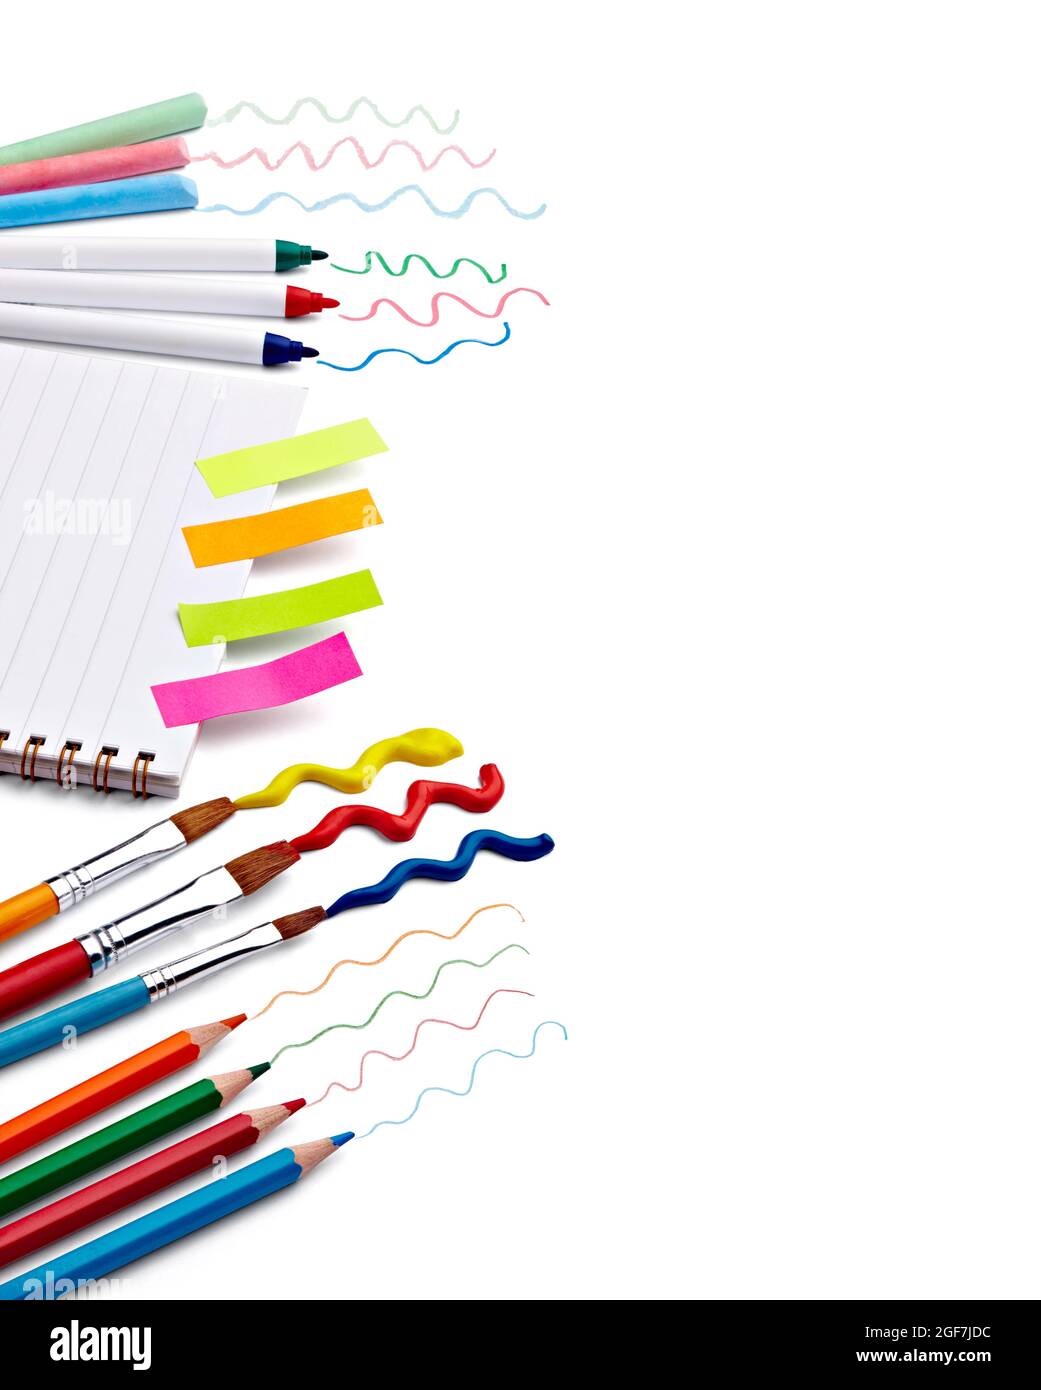 formazione supply scuola background matita penna imparare ritorno a forniture libro carta crayon notebook Foto Stock